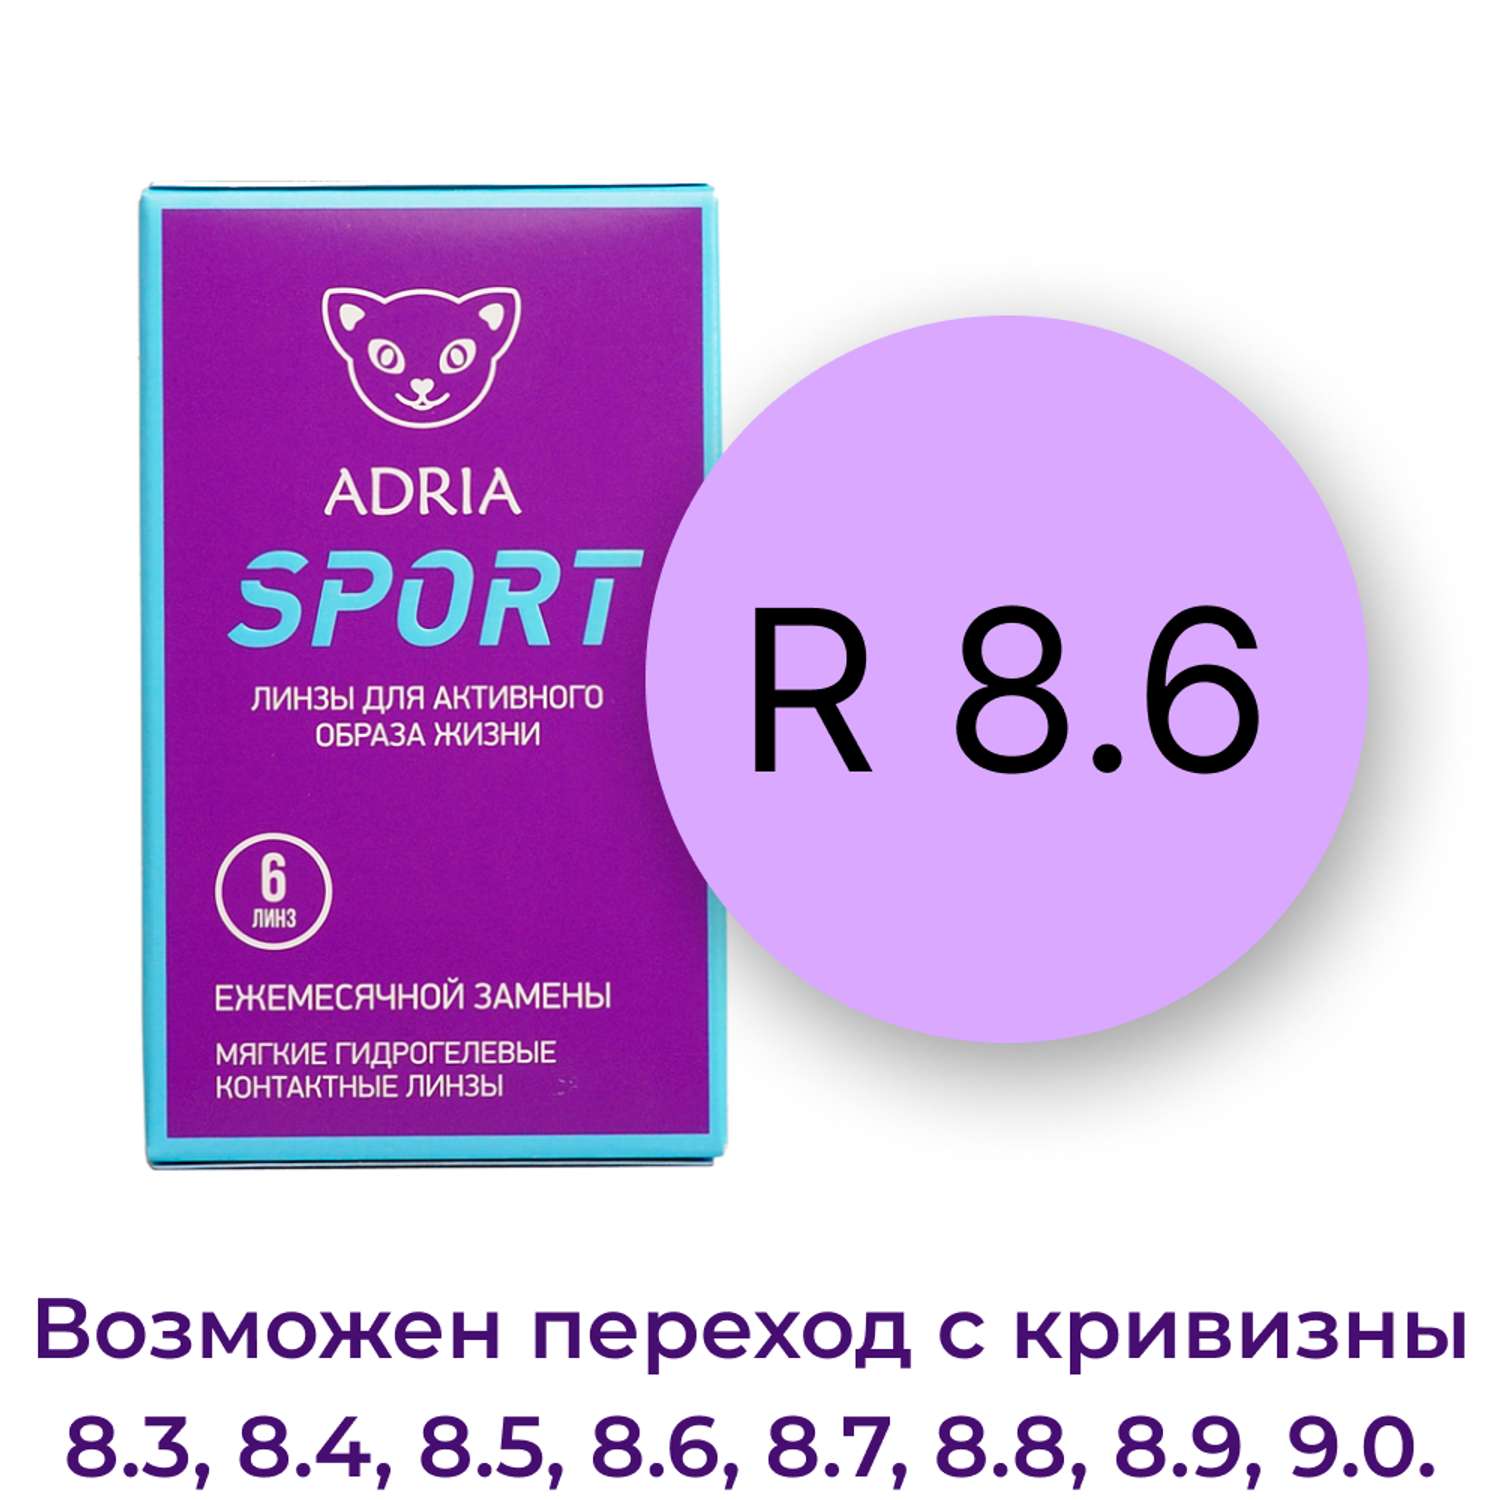 Контактные линзы ADRIA Sport 6 линз R 8.6 -1.25 - фото 3